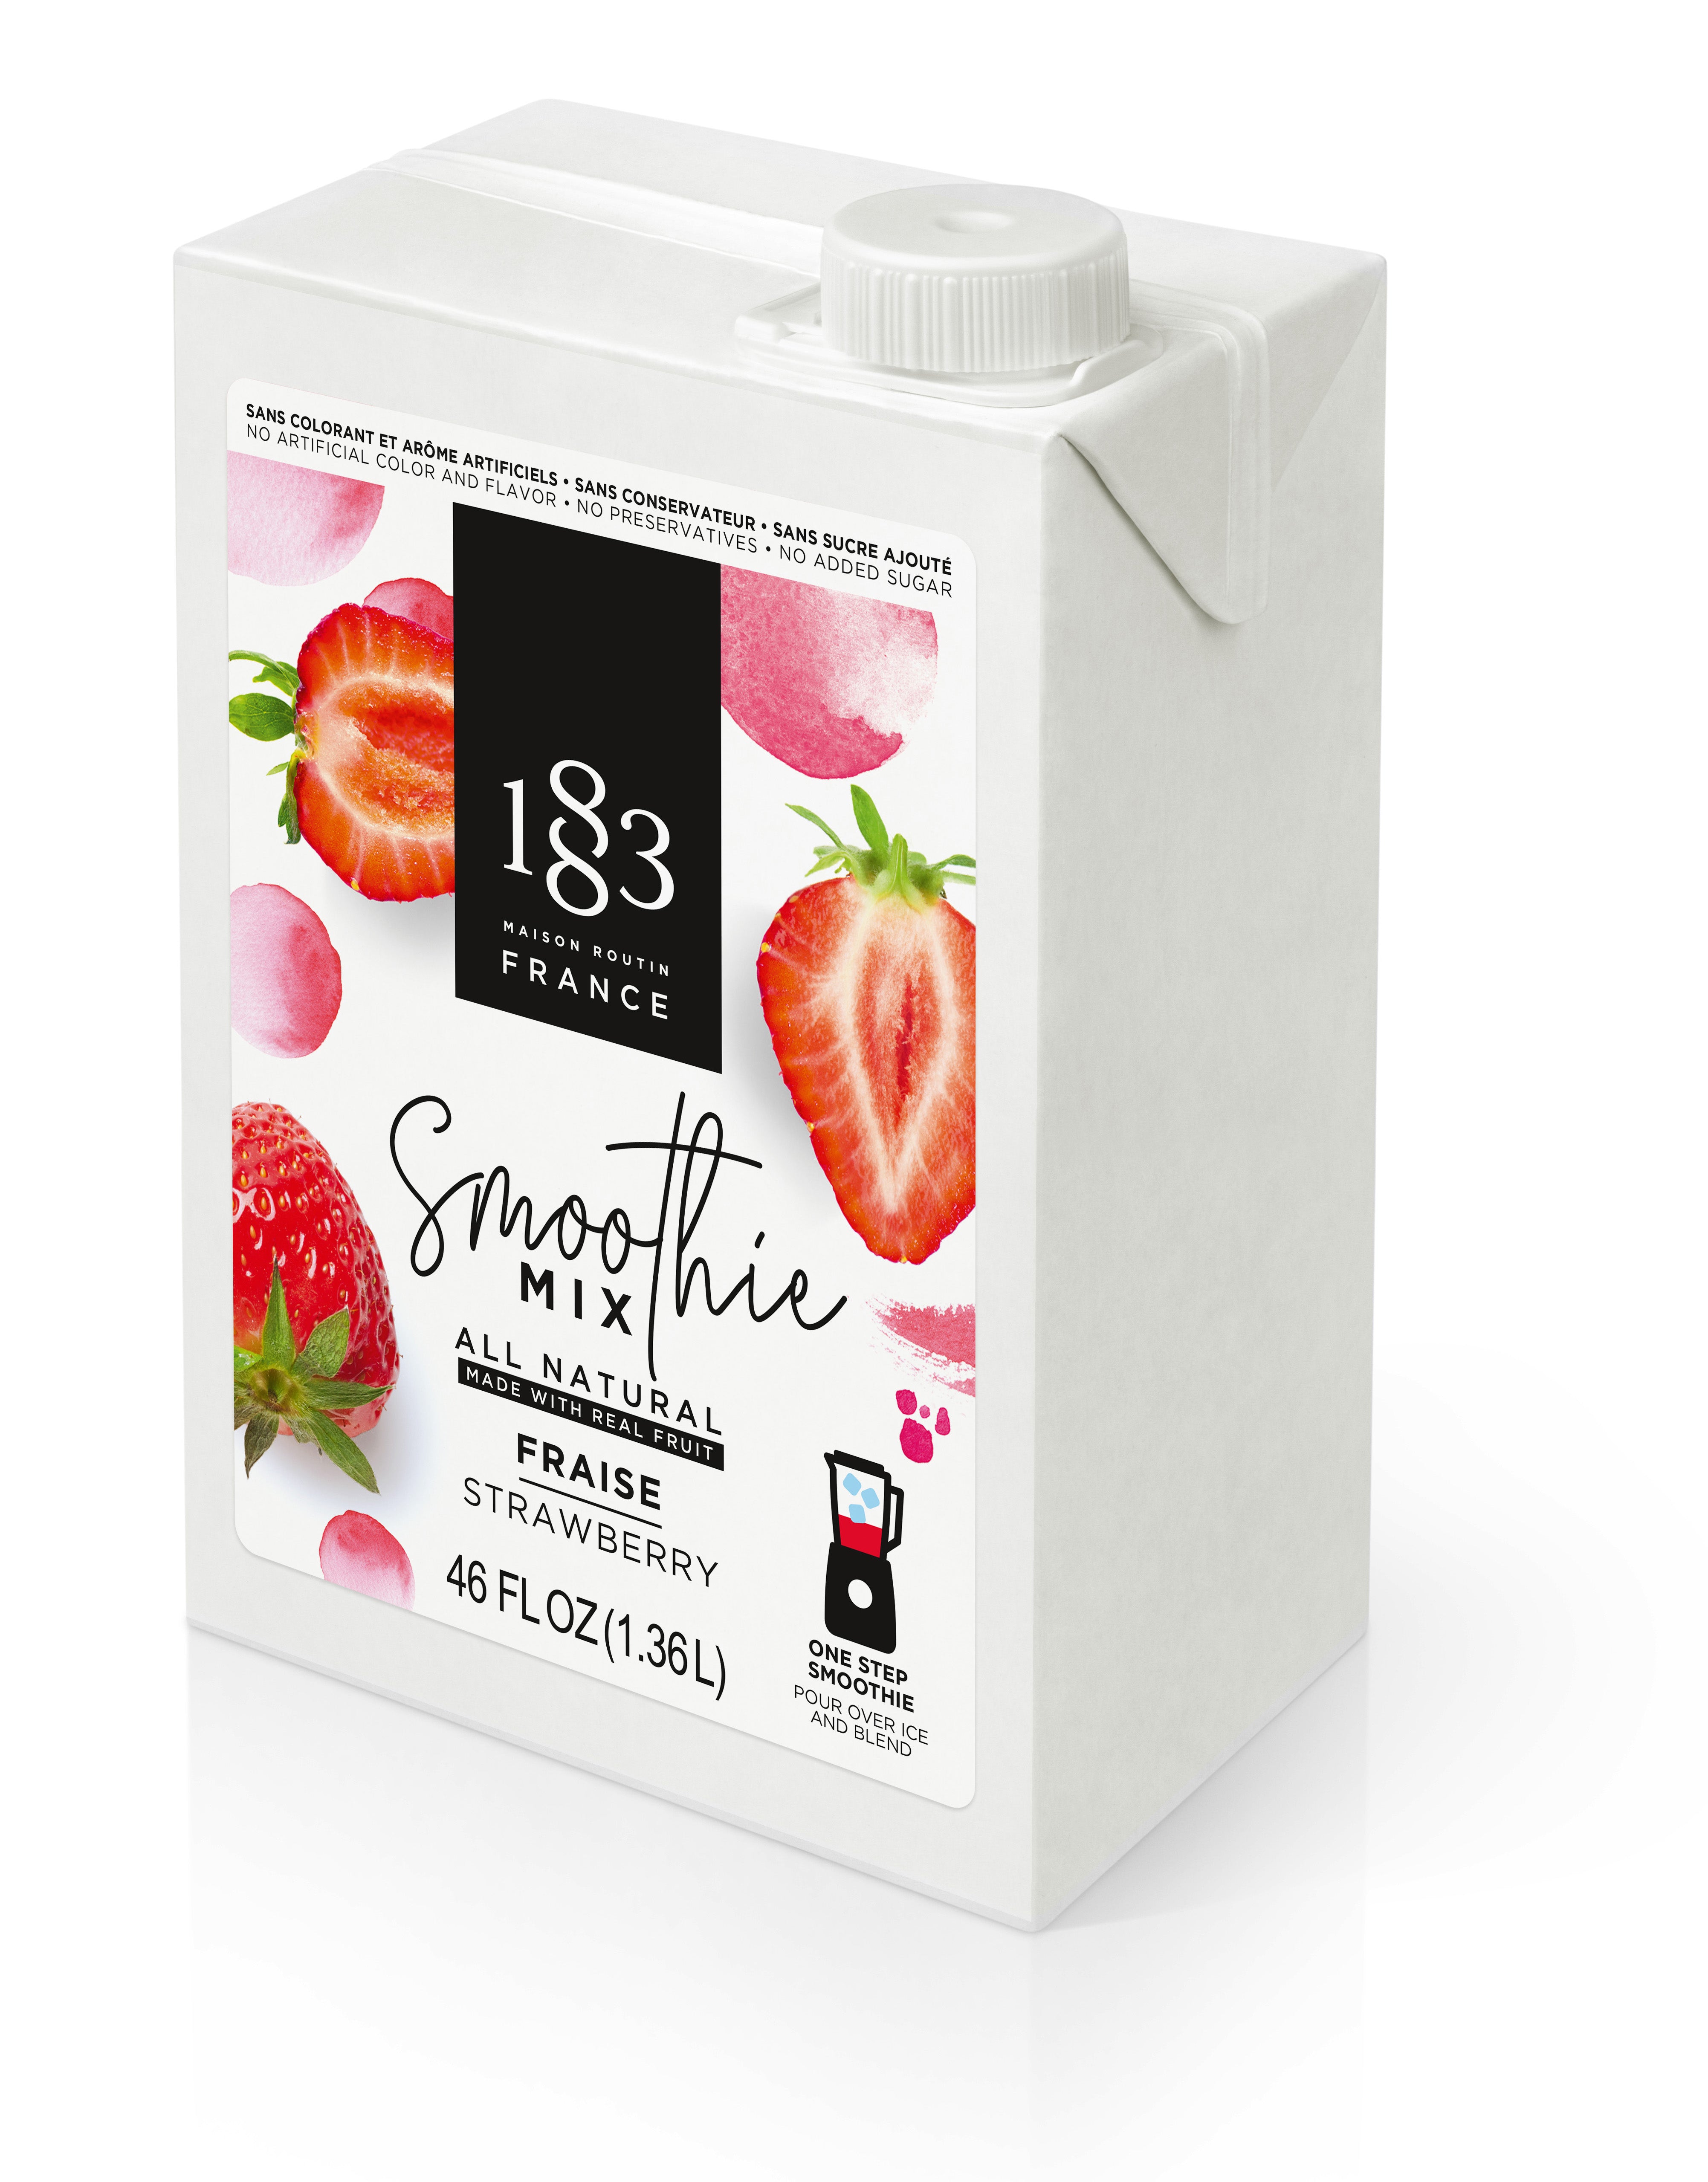 1883 Smoothie Mix - 46oz Carton: Strawberry